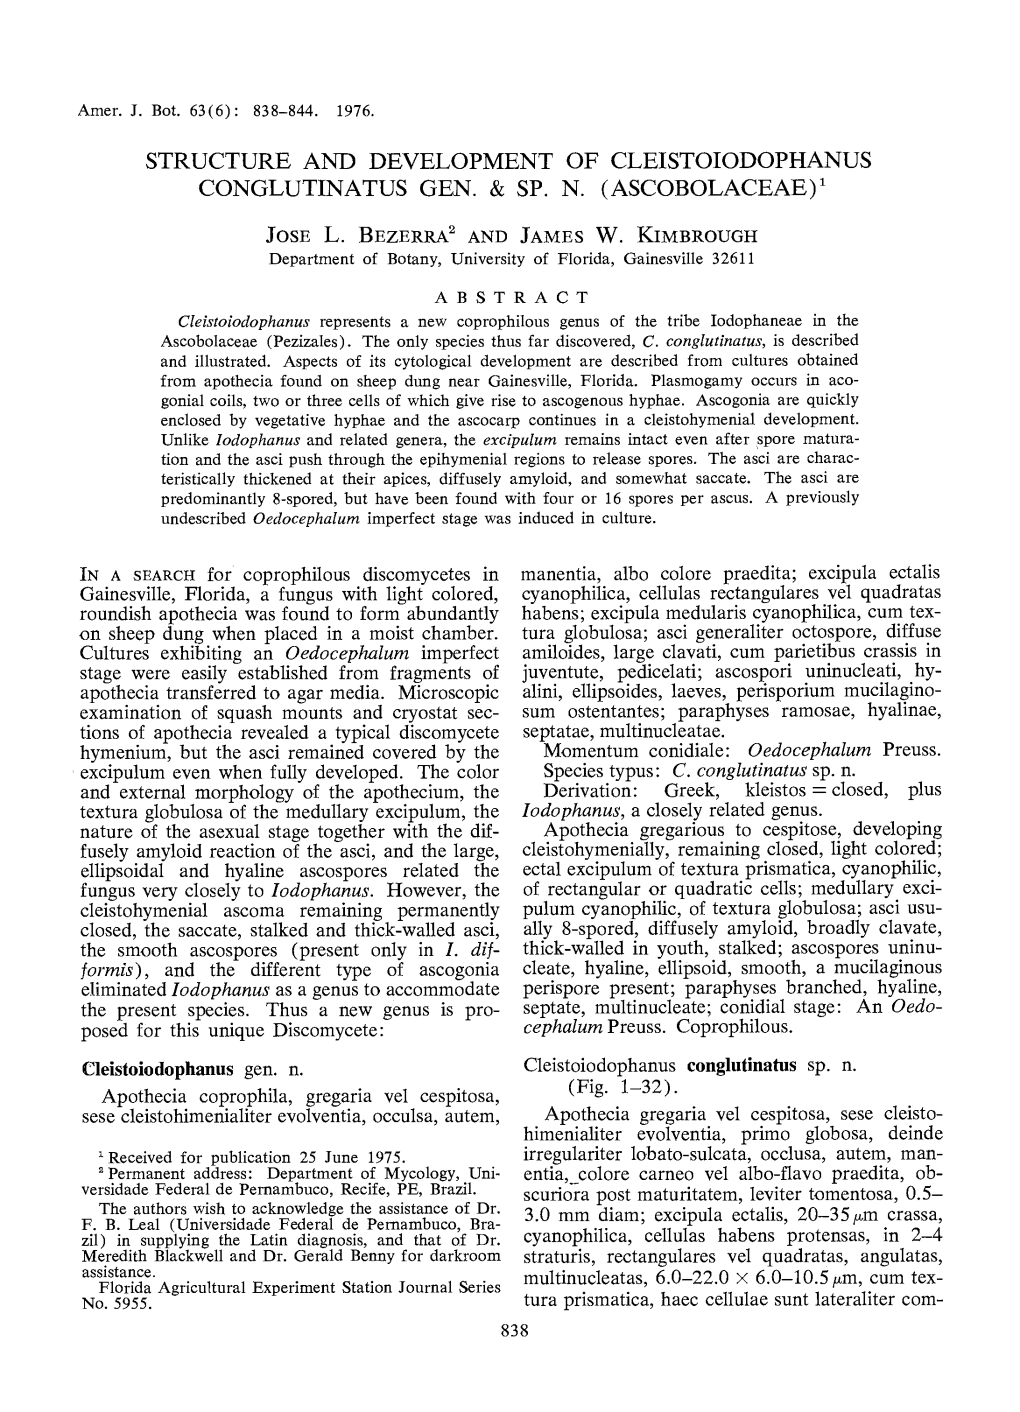 Structure and Development of Cleistoiodophanus Conglutinatus Gen